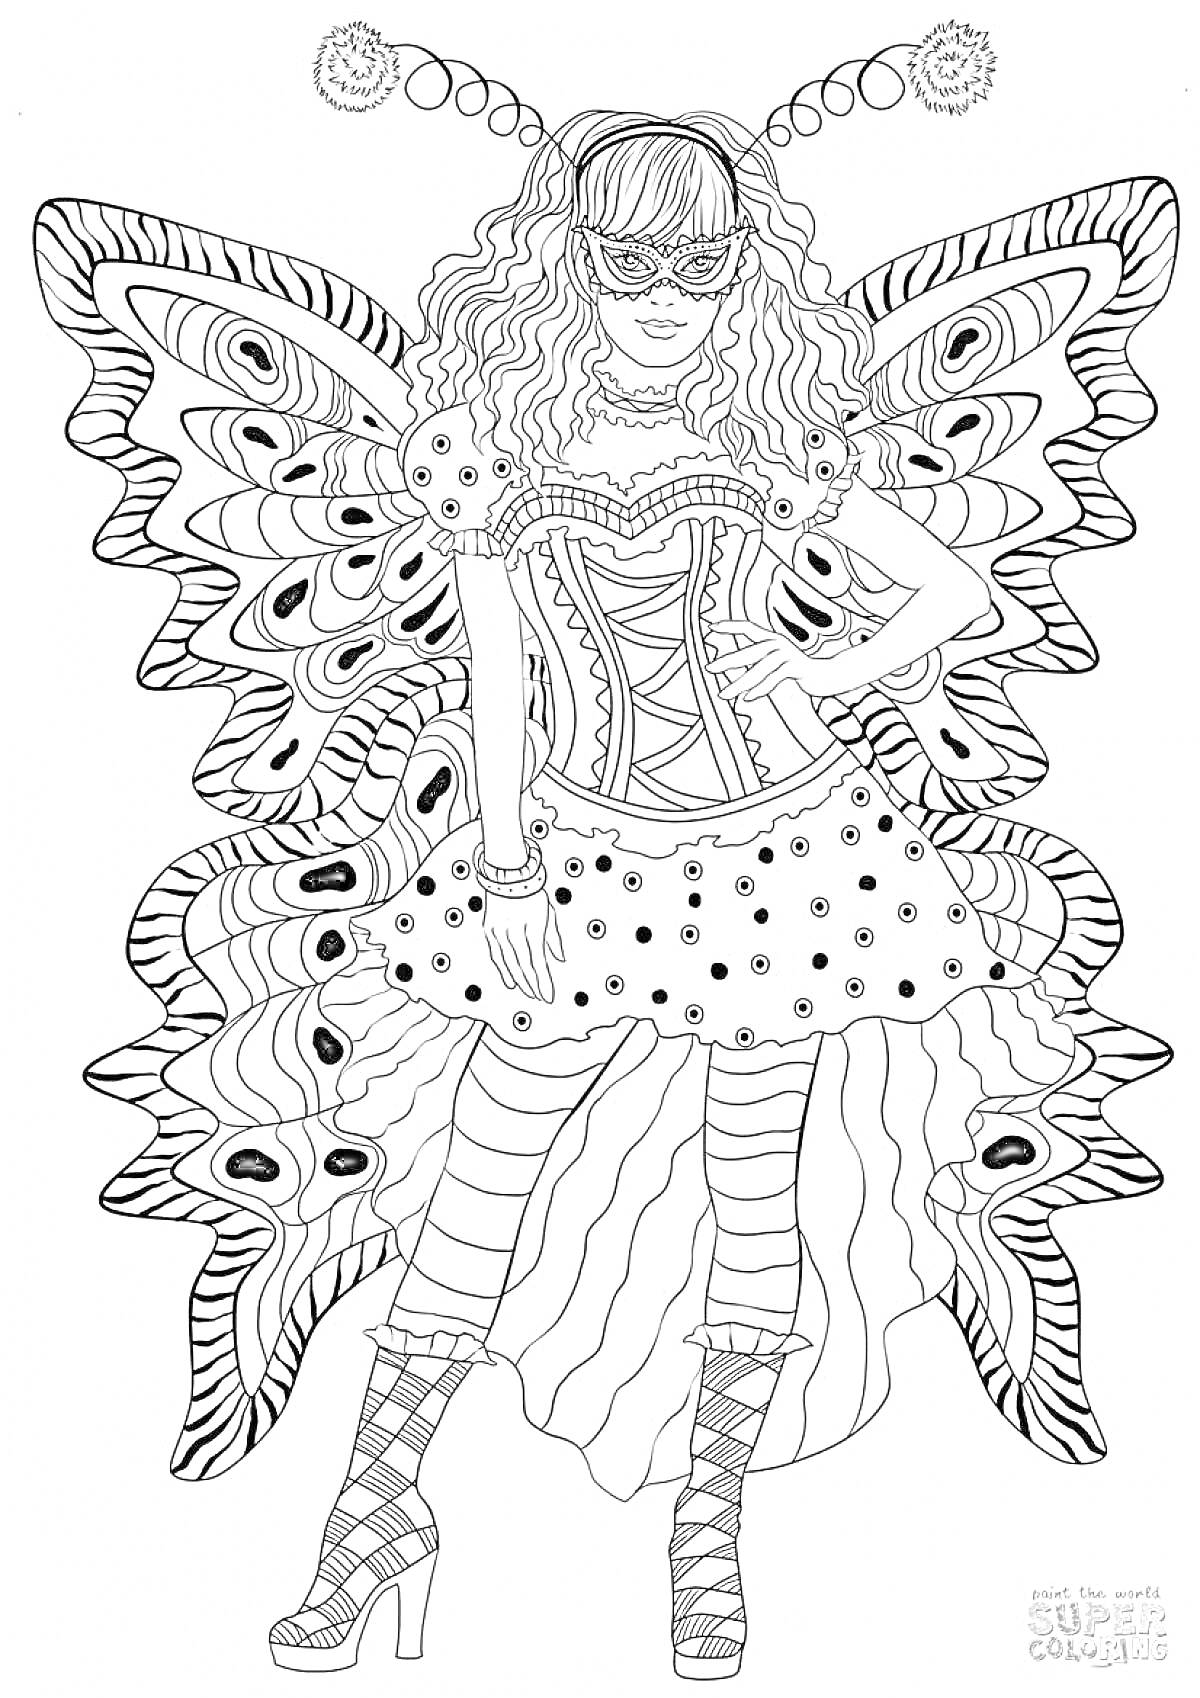 Раскраска Девушка в карнавальном костюме с крыльями бабочки, корсетом, юбкой в горошек, маской и полосатыми чулками